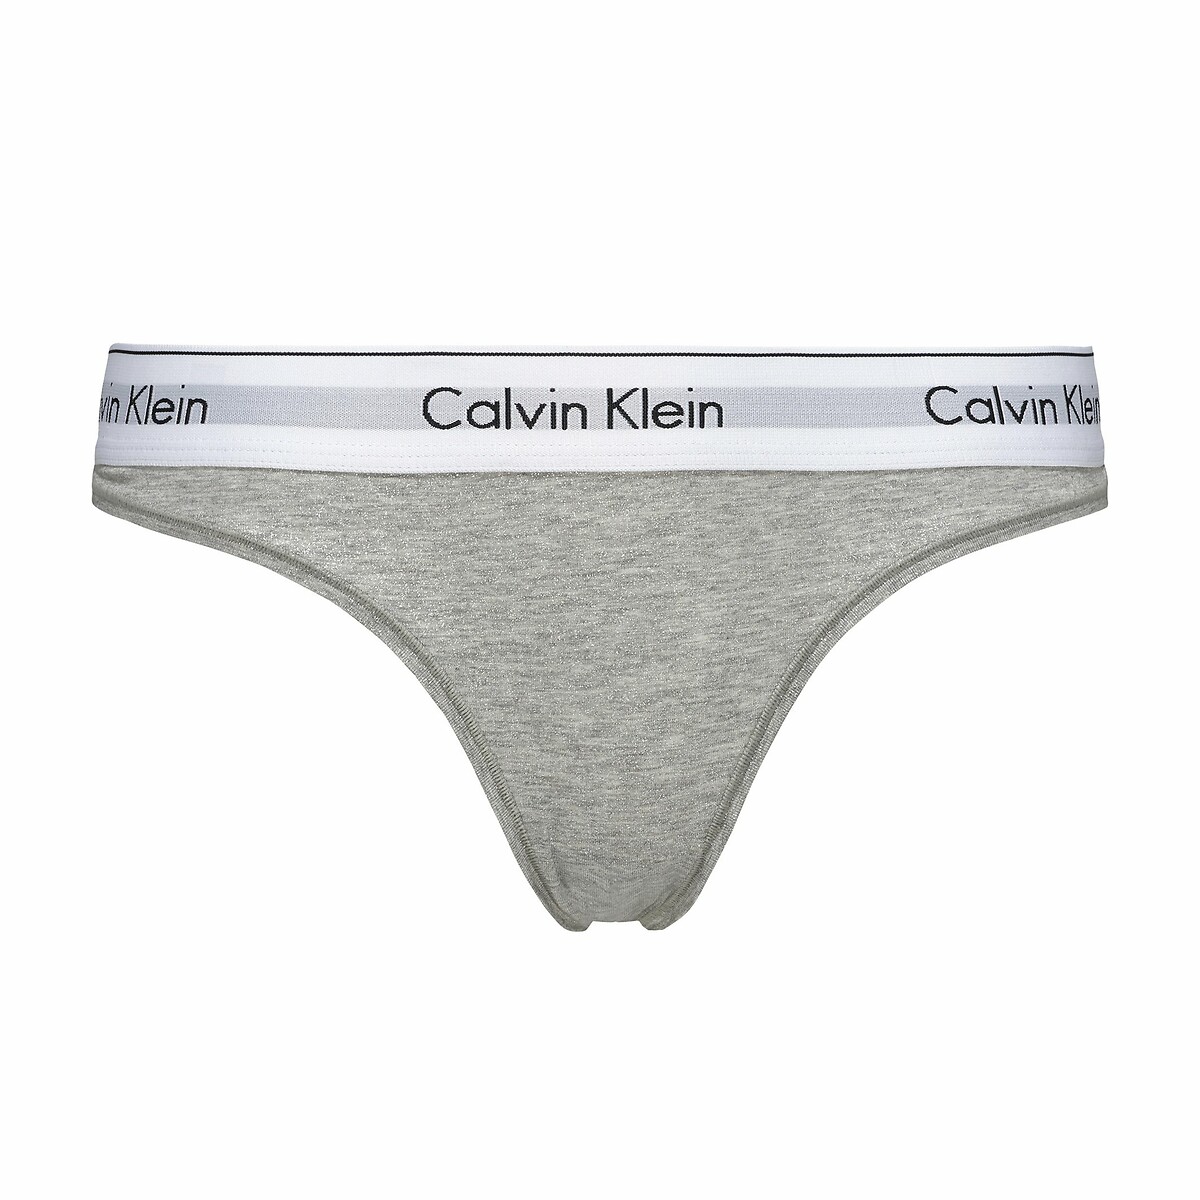 String modern cotton, markenschriftzug Calvin Klein Underwear | La Redoute